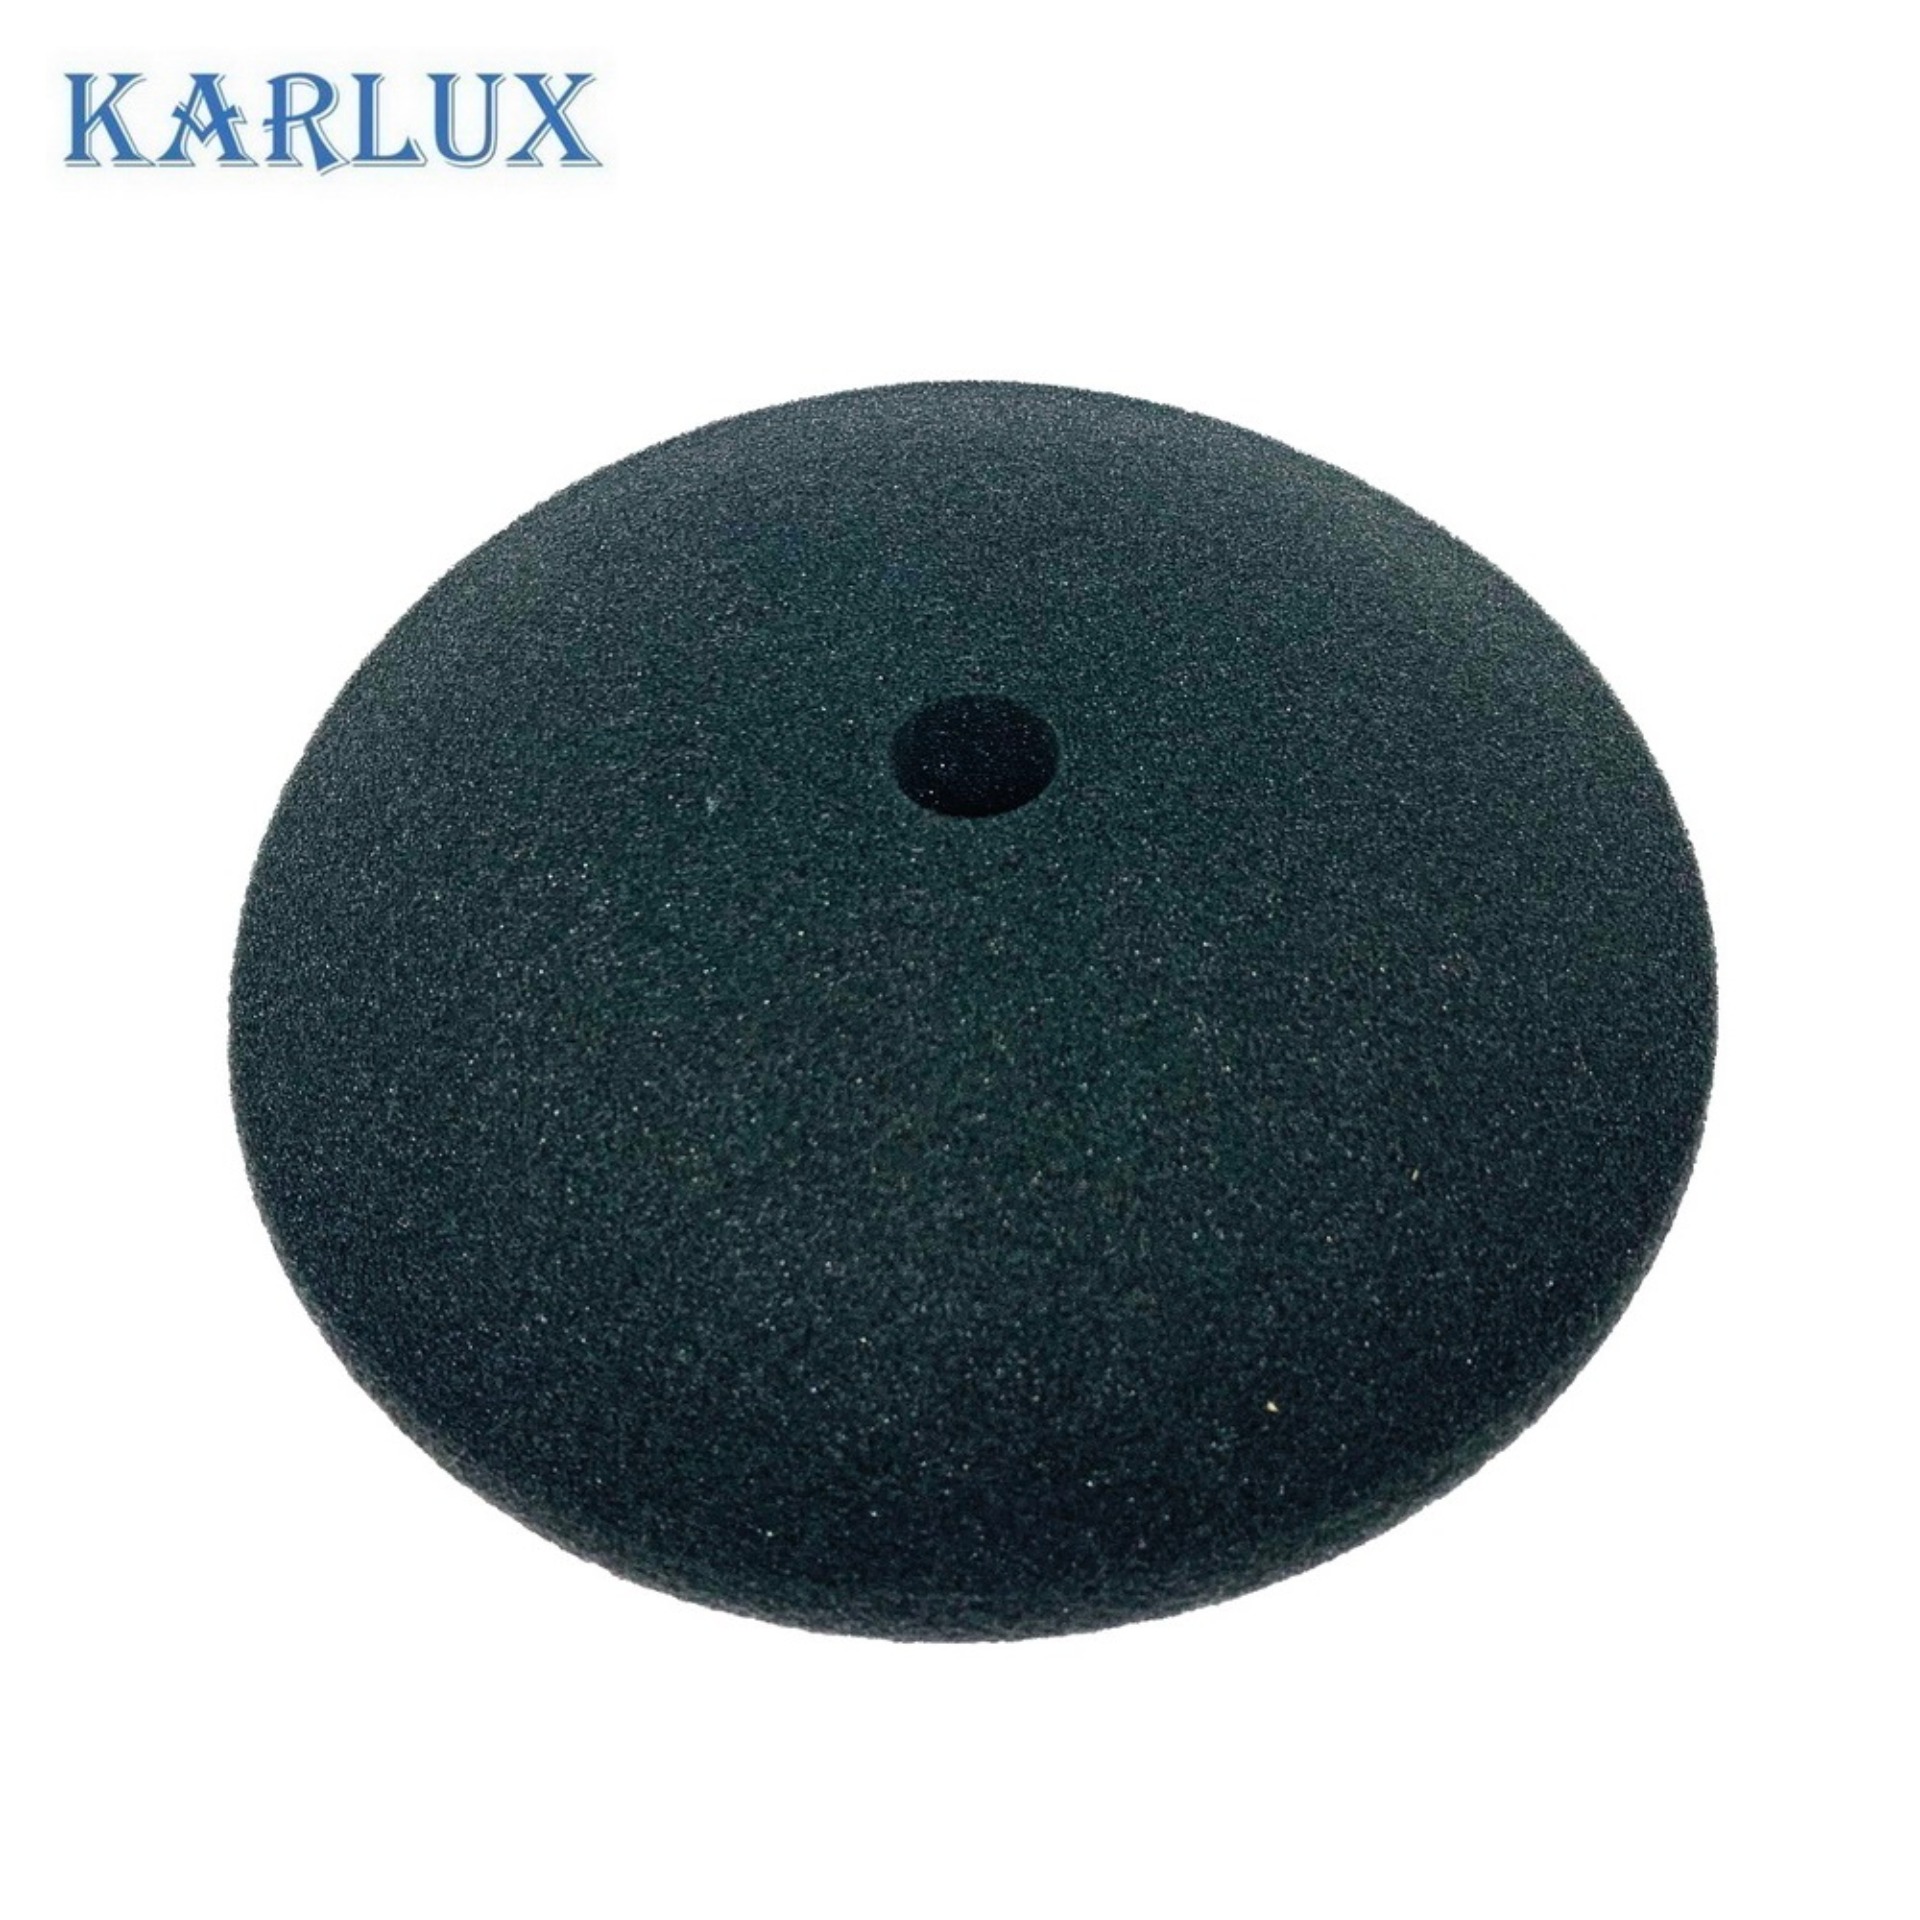 Karlux POLISHING FOAM ฟองน้ำสีดำ ขัดเงาละเอียด 8นิ้ว แบบเรียบ (ใช้กับแป้นจับขนาด 7นิ้ว)